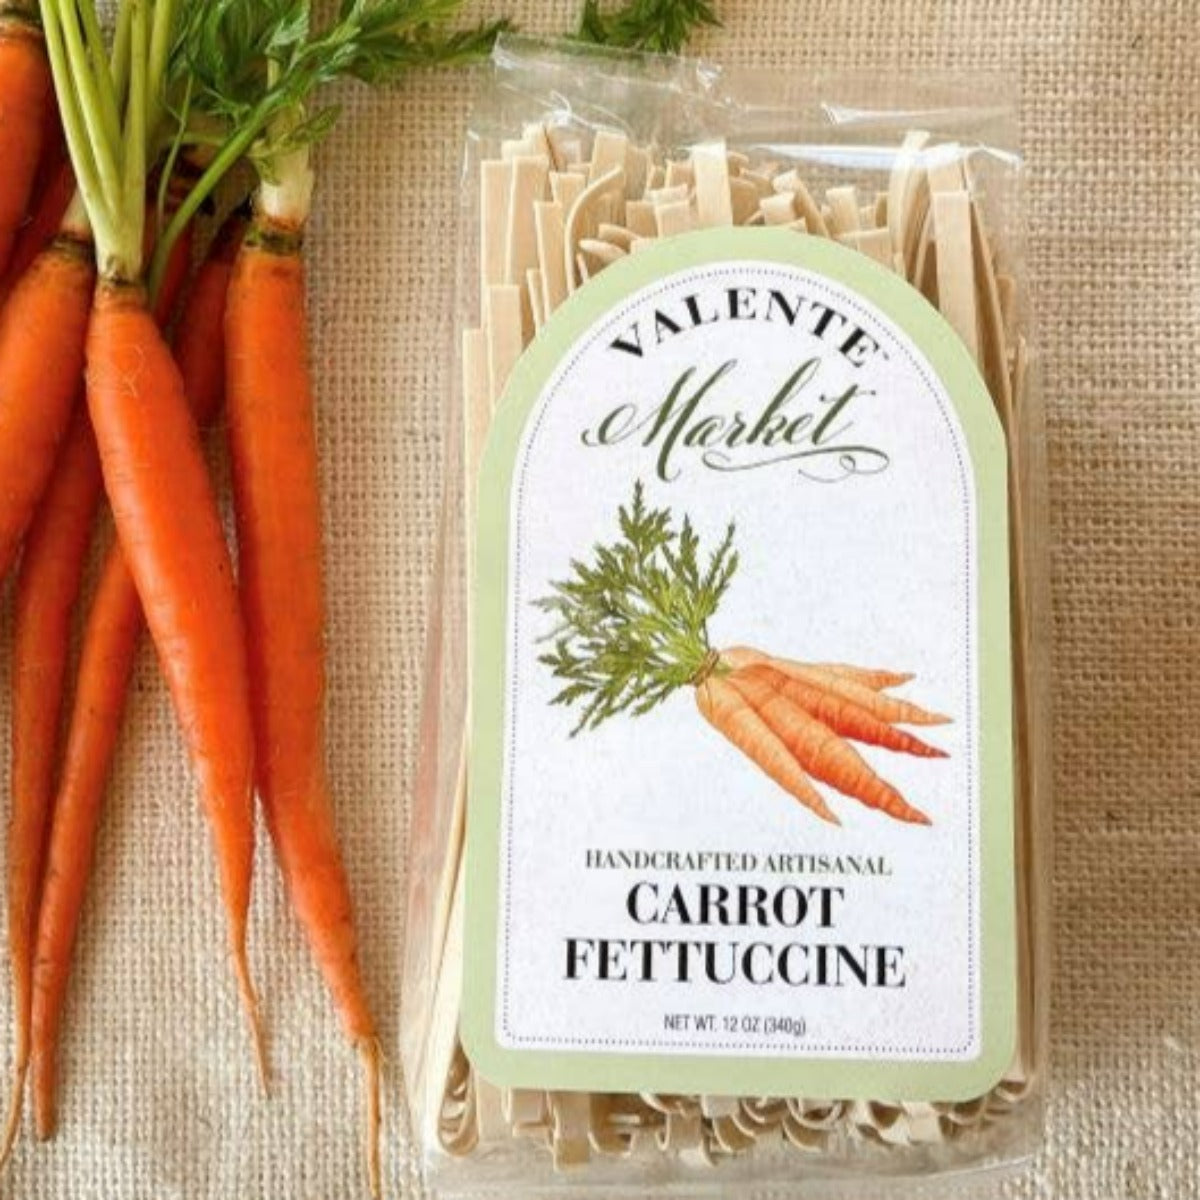 Carrot Fettuccine, valente pasta, olive and basket